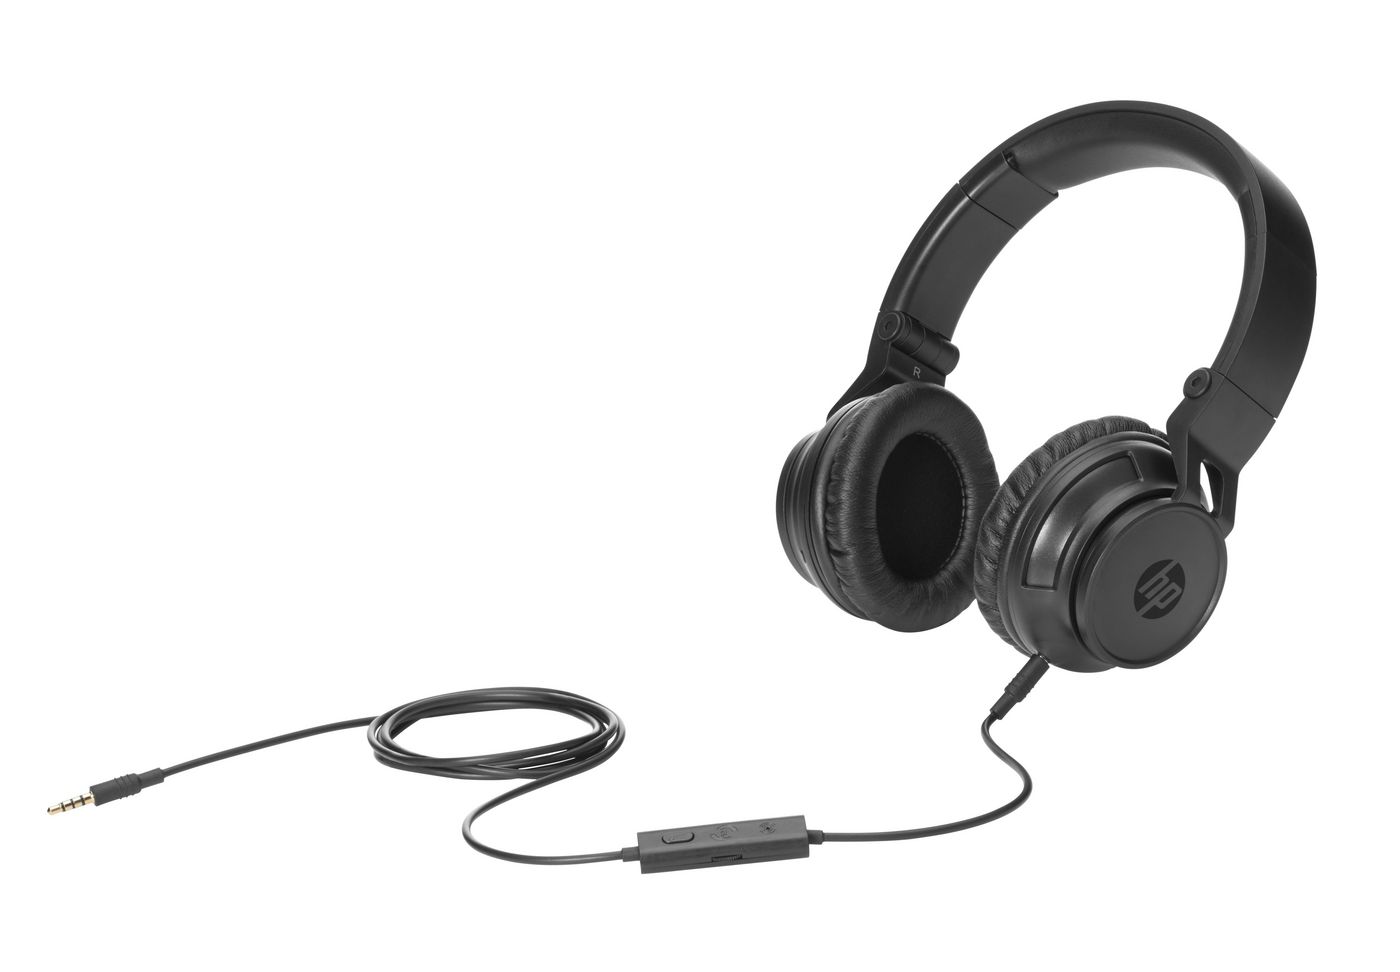 H3100 Stereo Black Headset